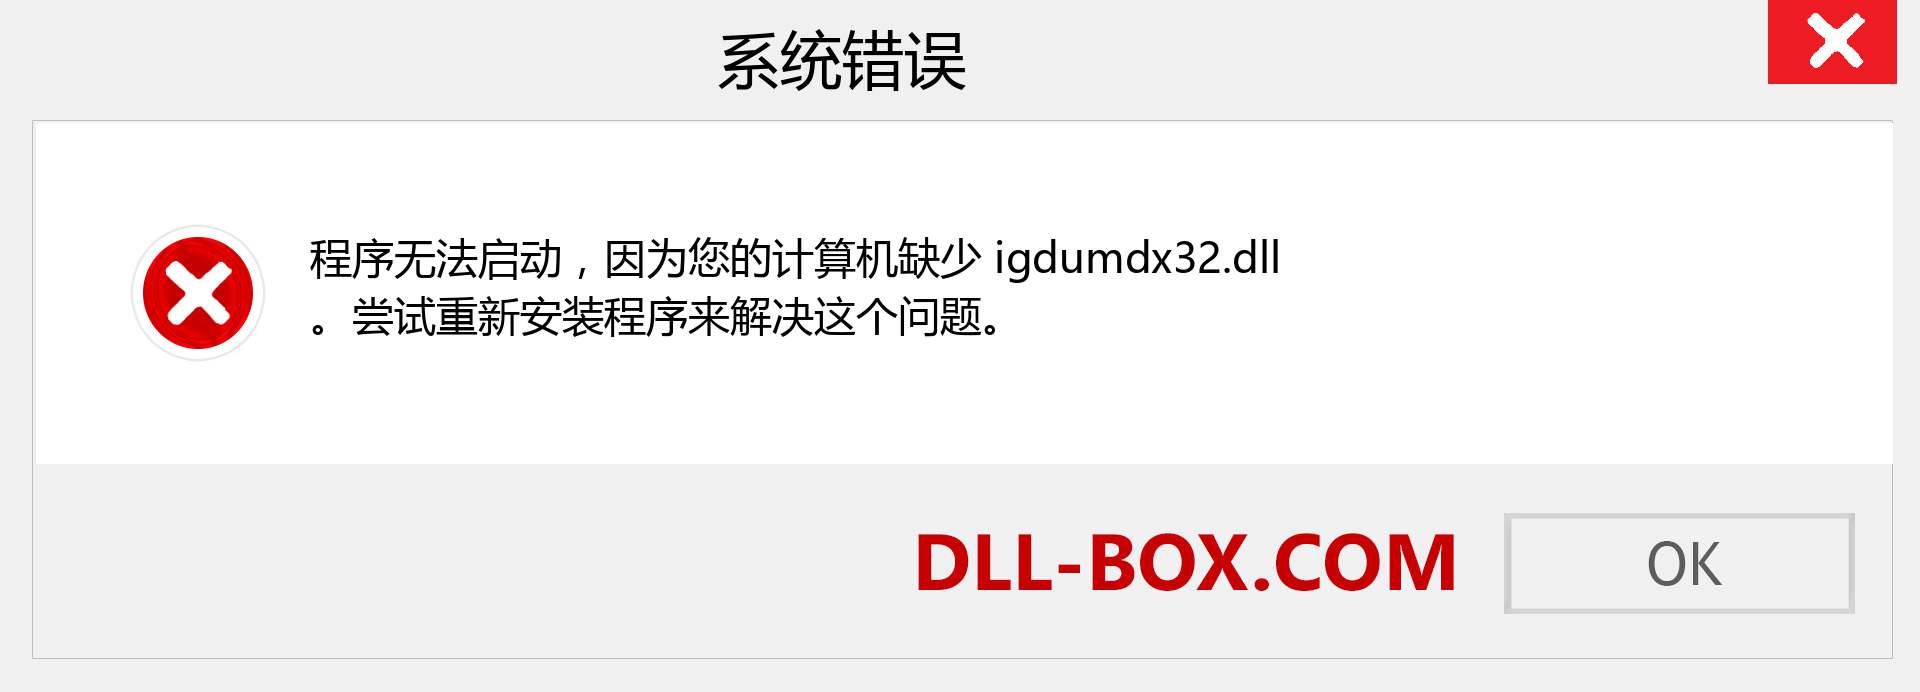 igdumdx32.dll 文件丢失？。 适用于 Windows 7、8、10 的下载 - 修复 Windows、照片、图像上的 igdumdx32 dll 丢失错误